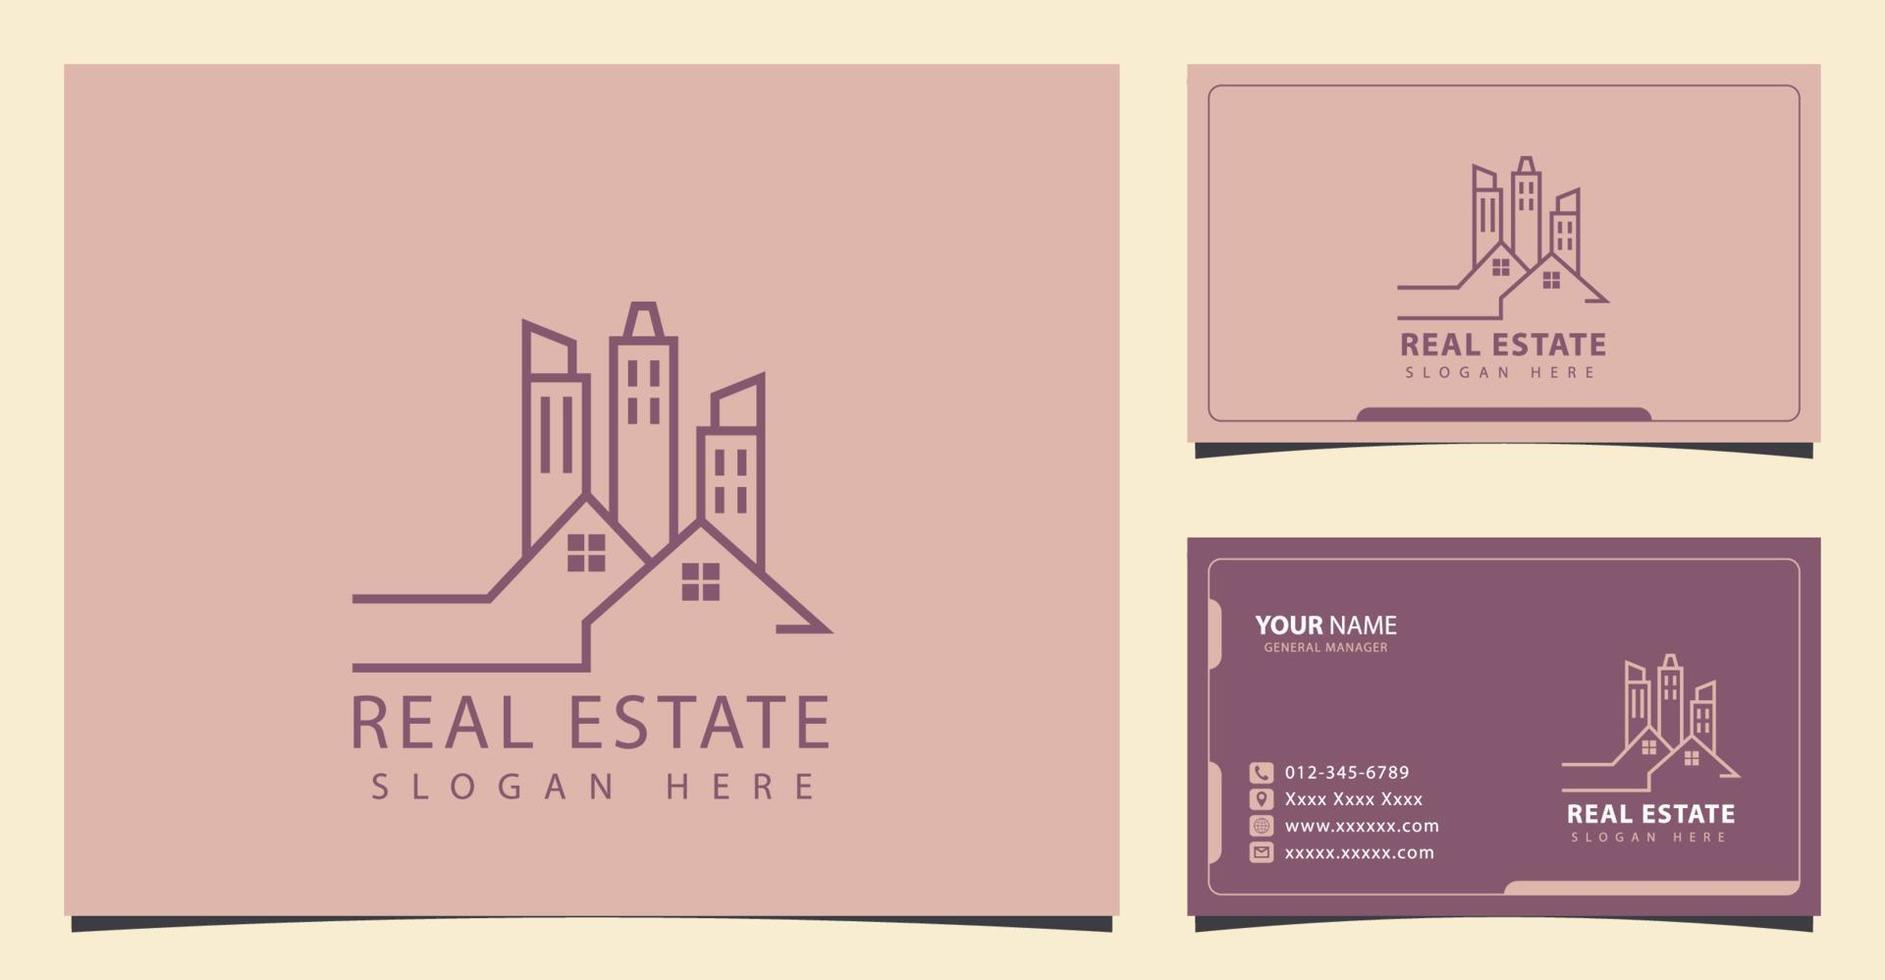 logo immobilier avec concept minimaliste et design de carte de visite vecteur